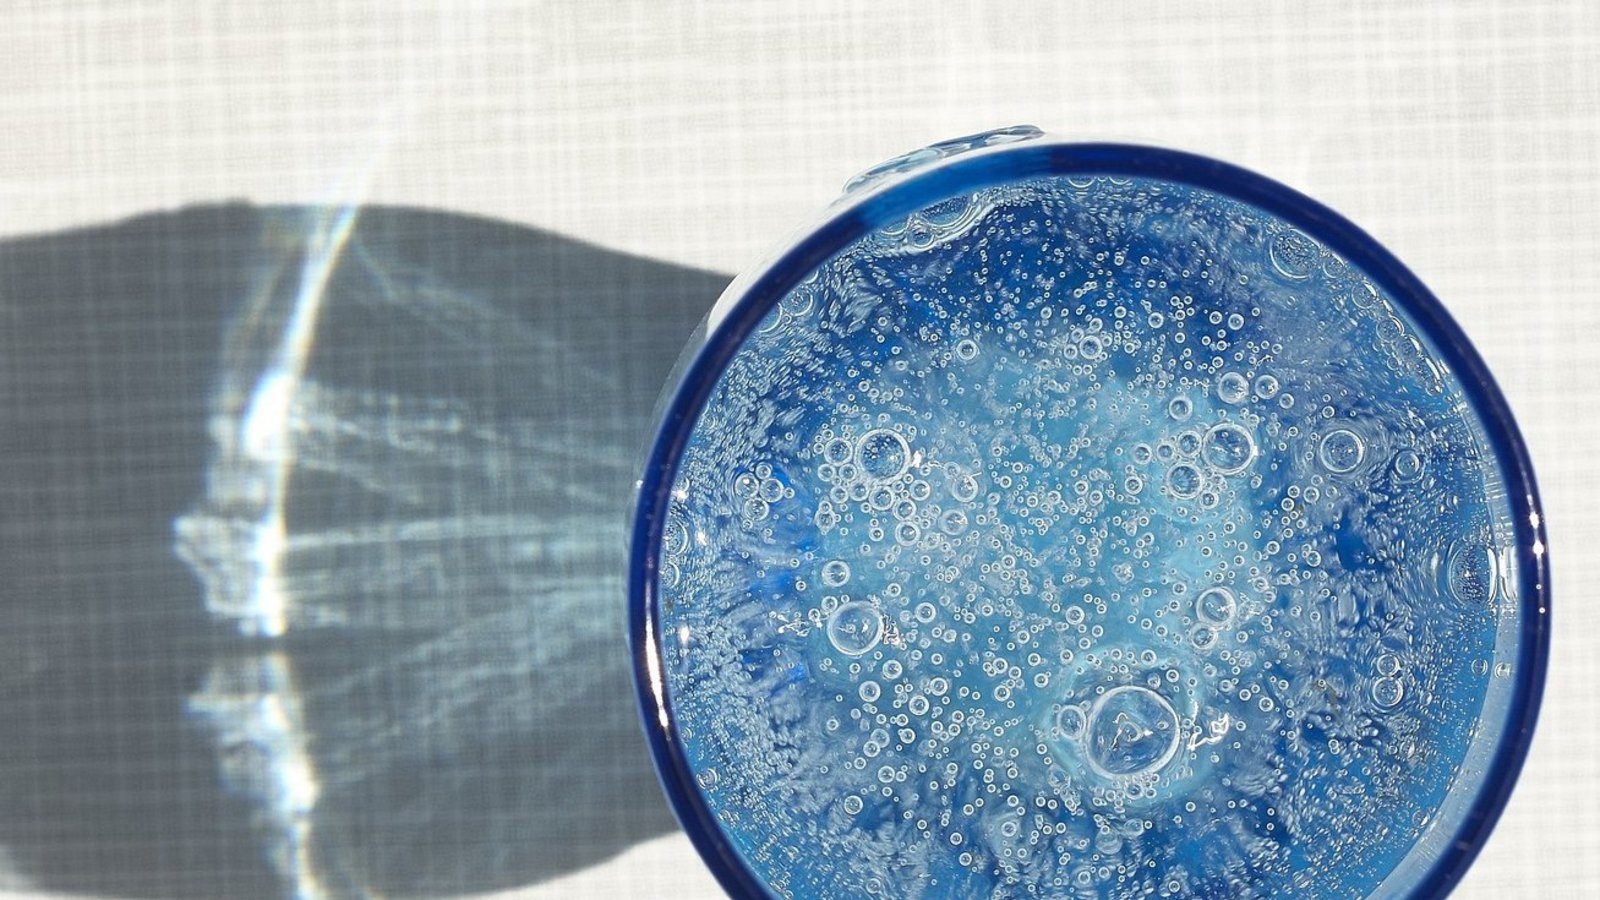 Mineralwasser enthält oft Quellkohlensäure und nicht solche aus der Düngemittelherstellung. Den Mangel spüren Hersteller trotzdem.   Foto: Pixabay